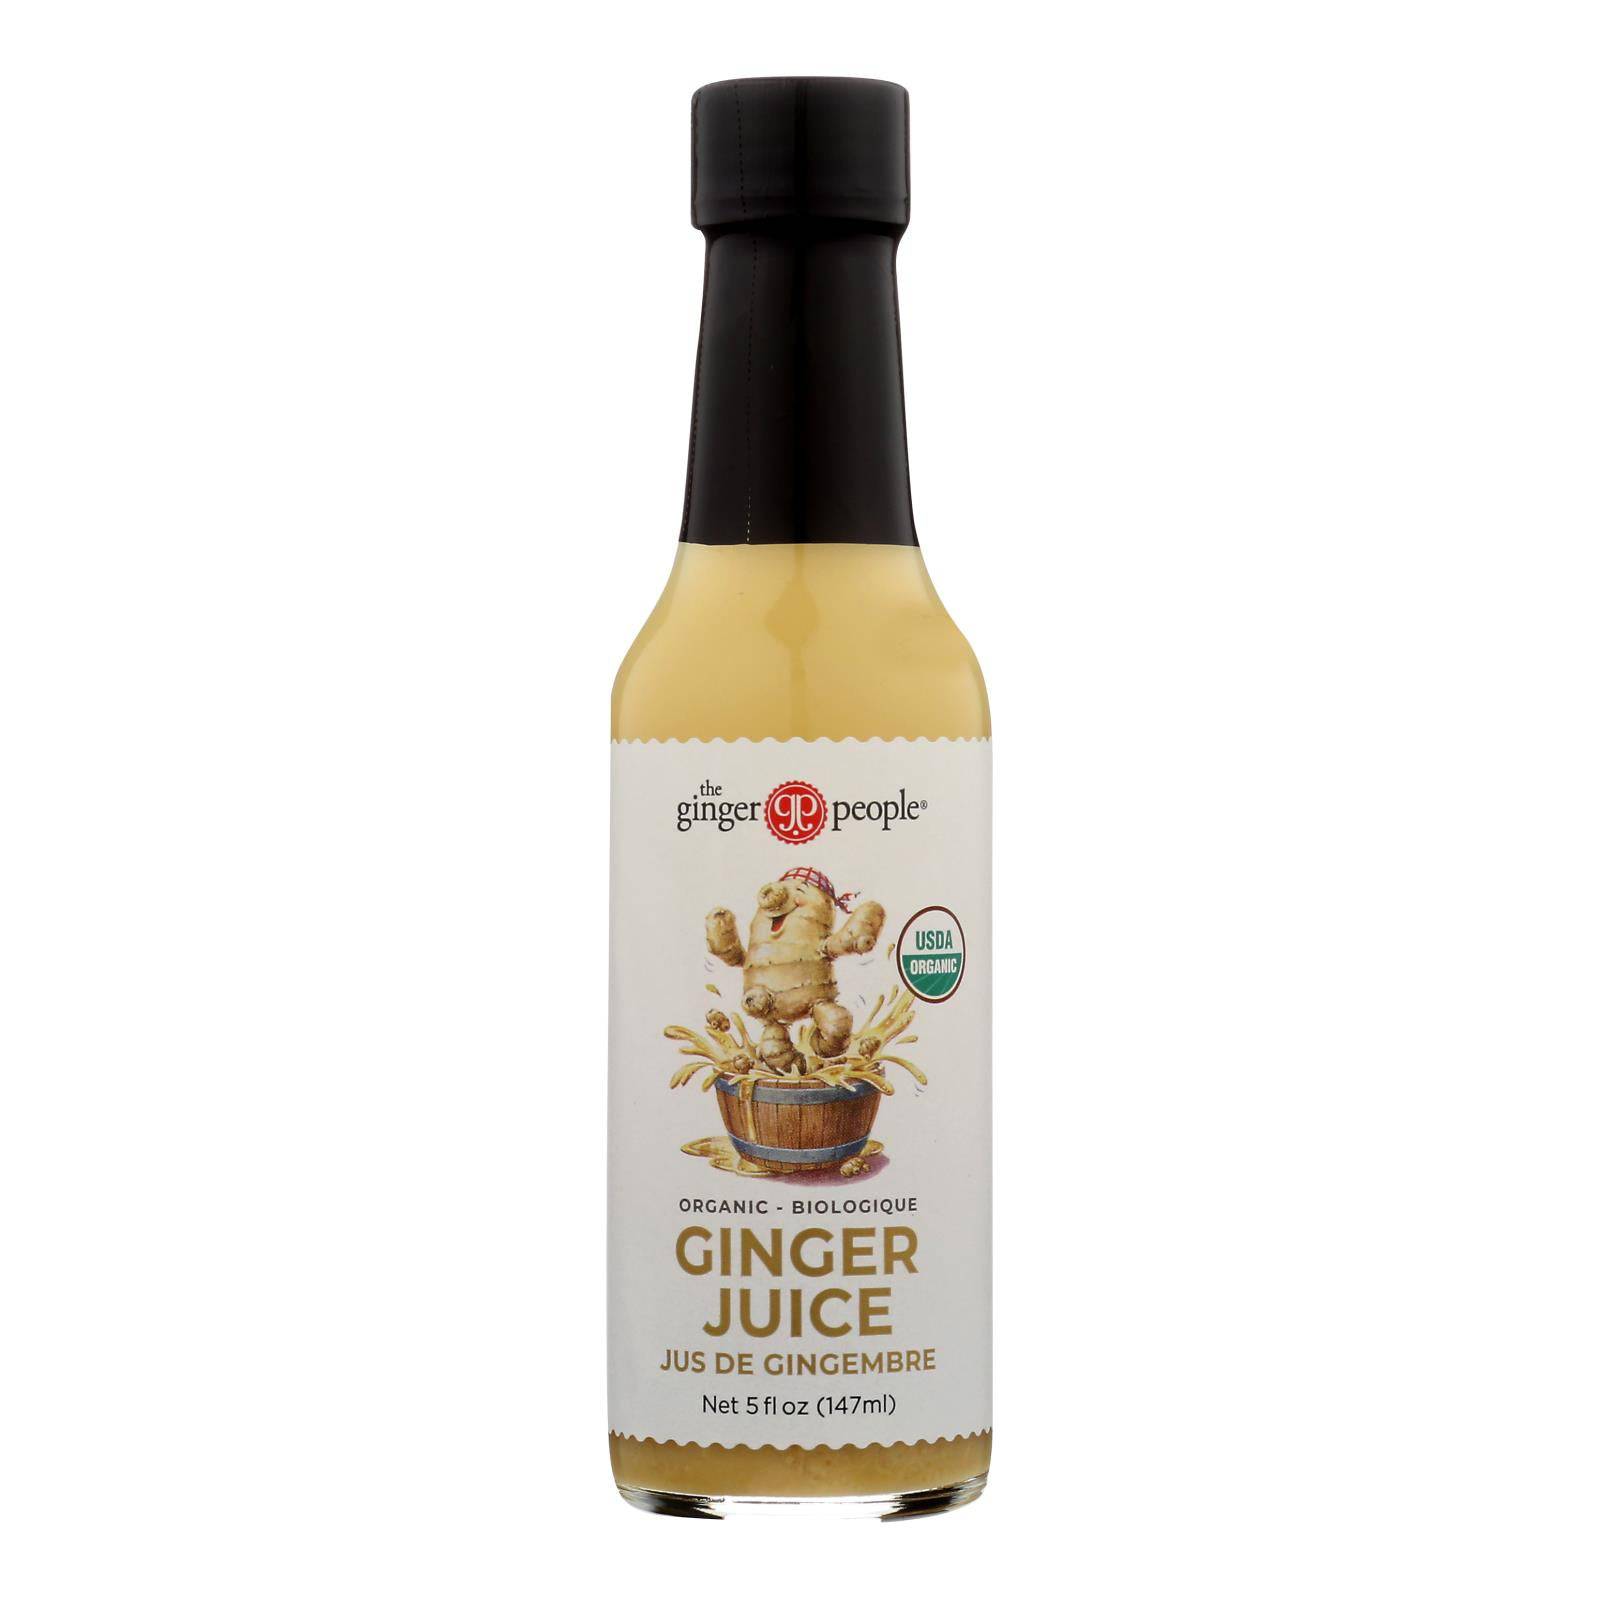 Buy Ginger People Ginger Juice - 5 Fl Oz - Case Of 12  at OnlyNaturals.us